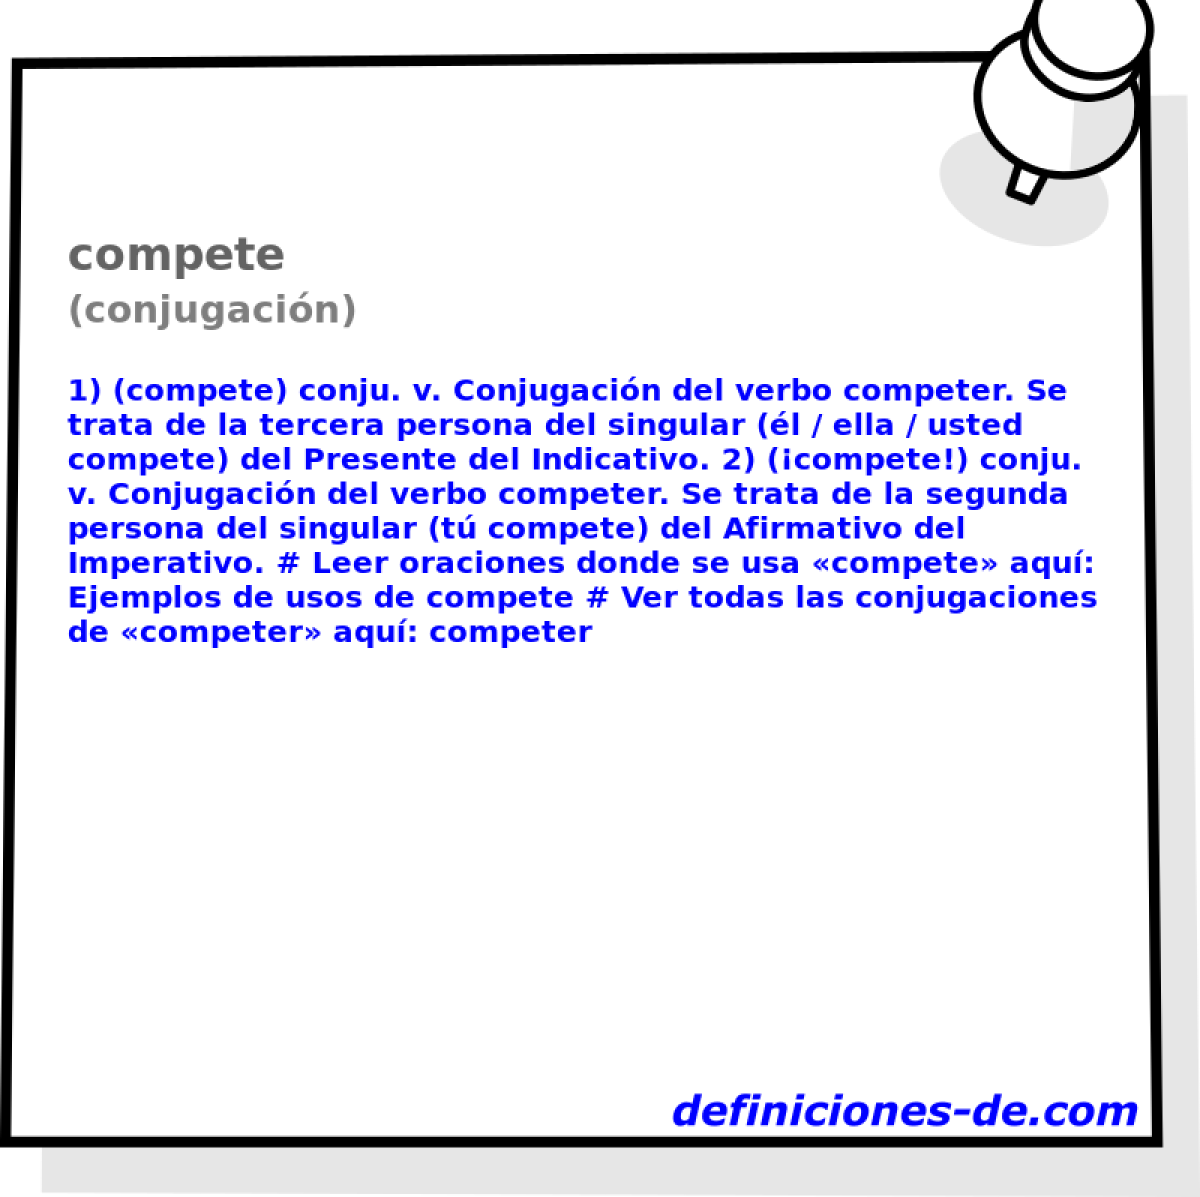 compete (conjugacin)